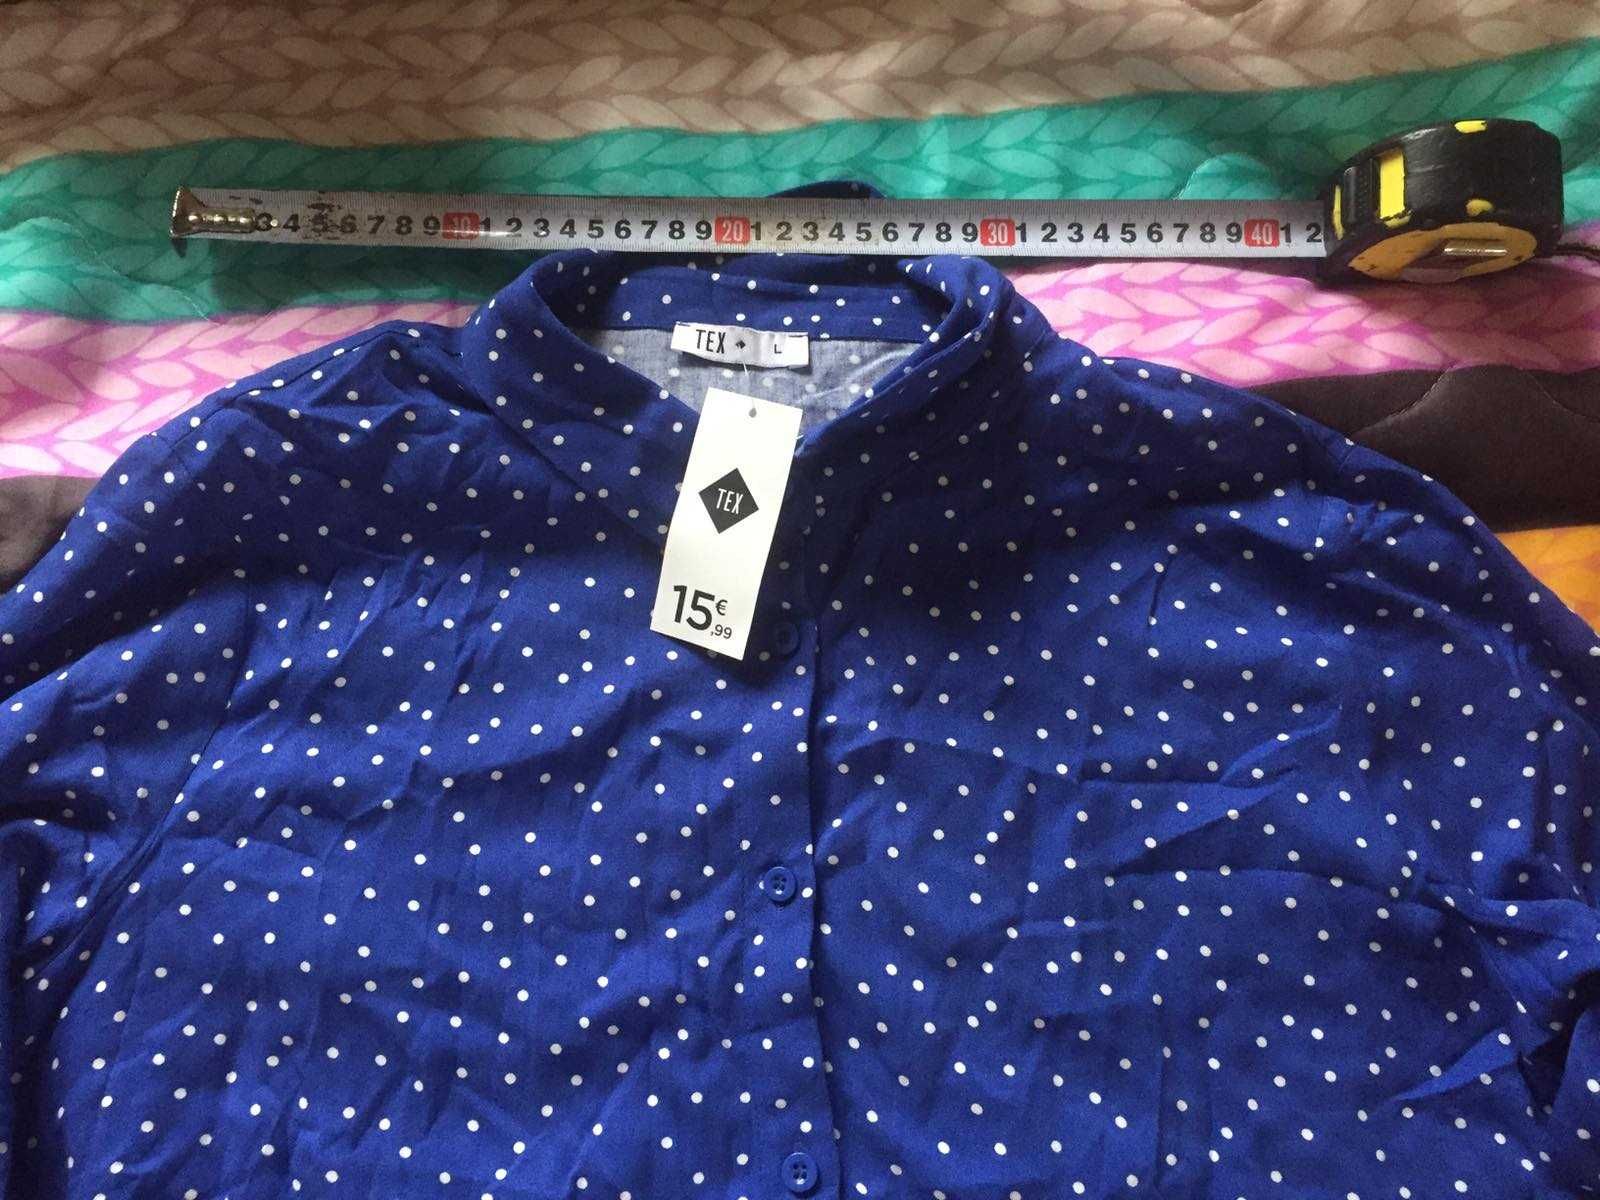 Новая женская рубашка ТЕХ размера L